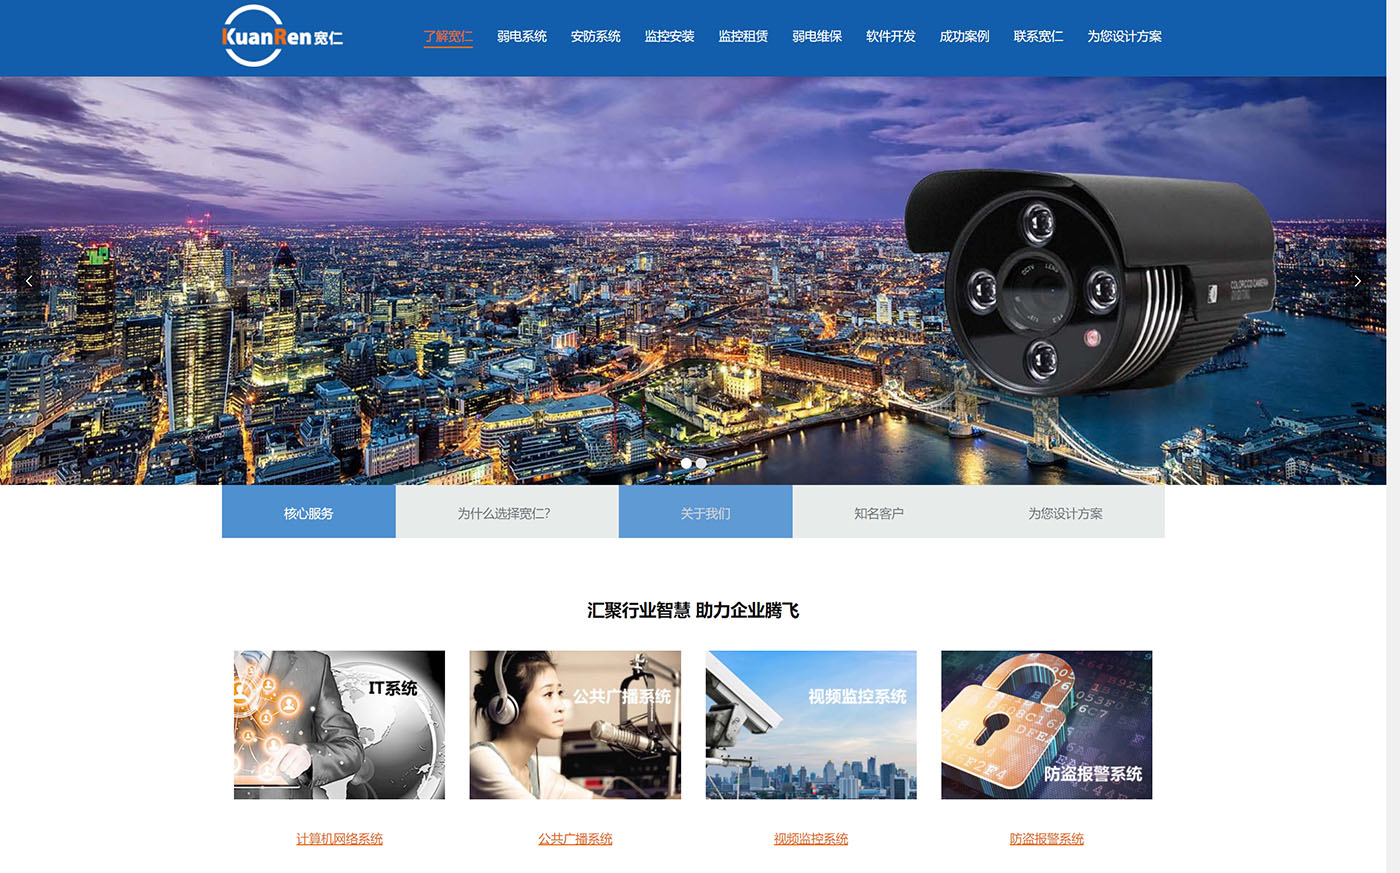 上海宽仁电子-网站制作案例展示